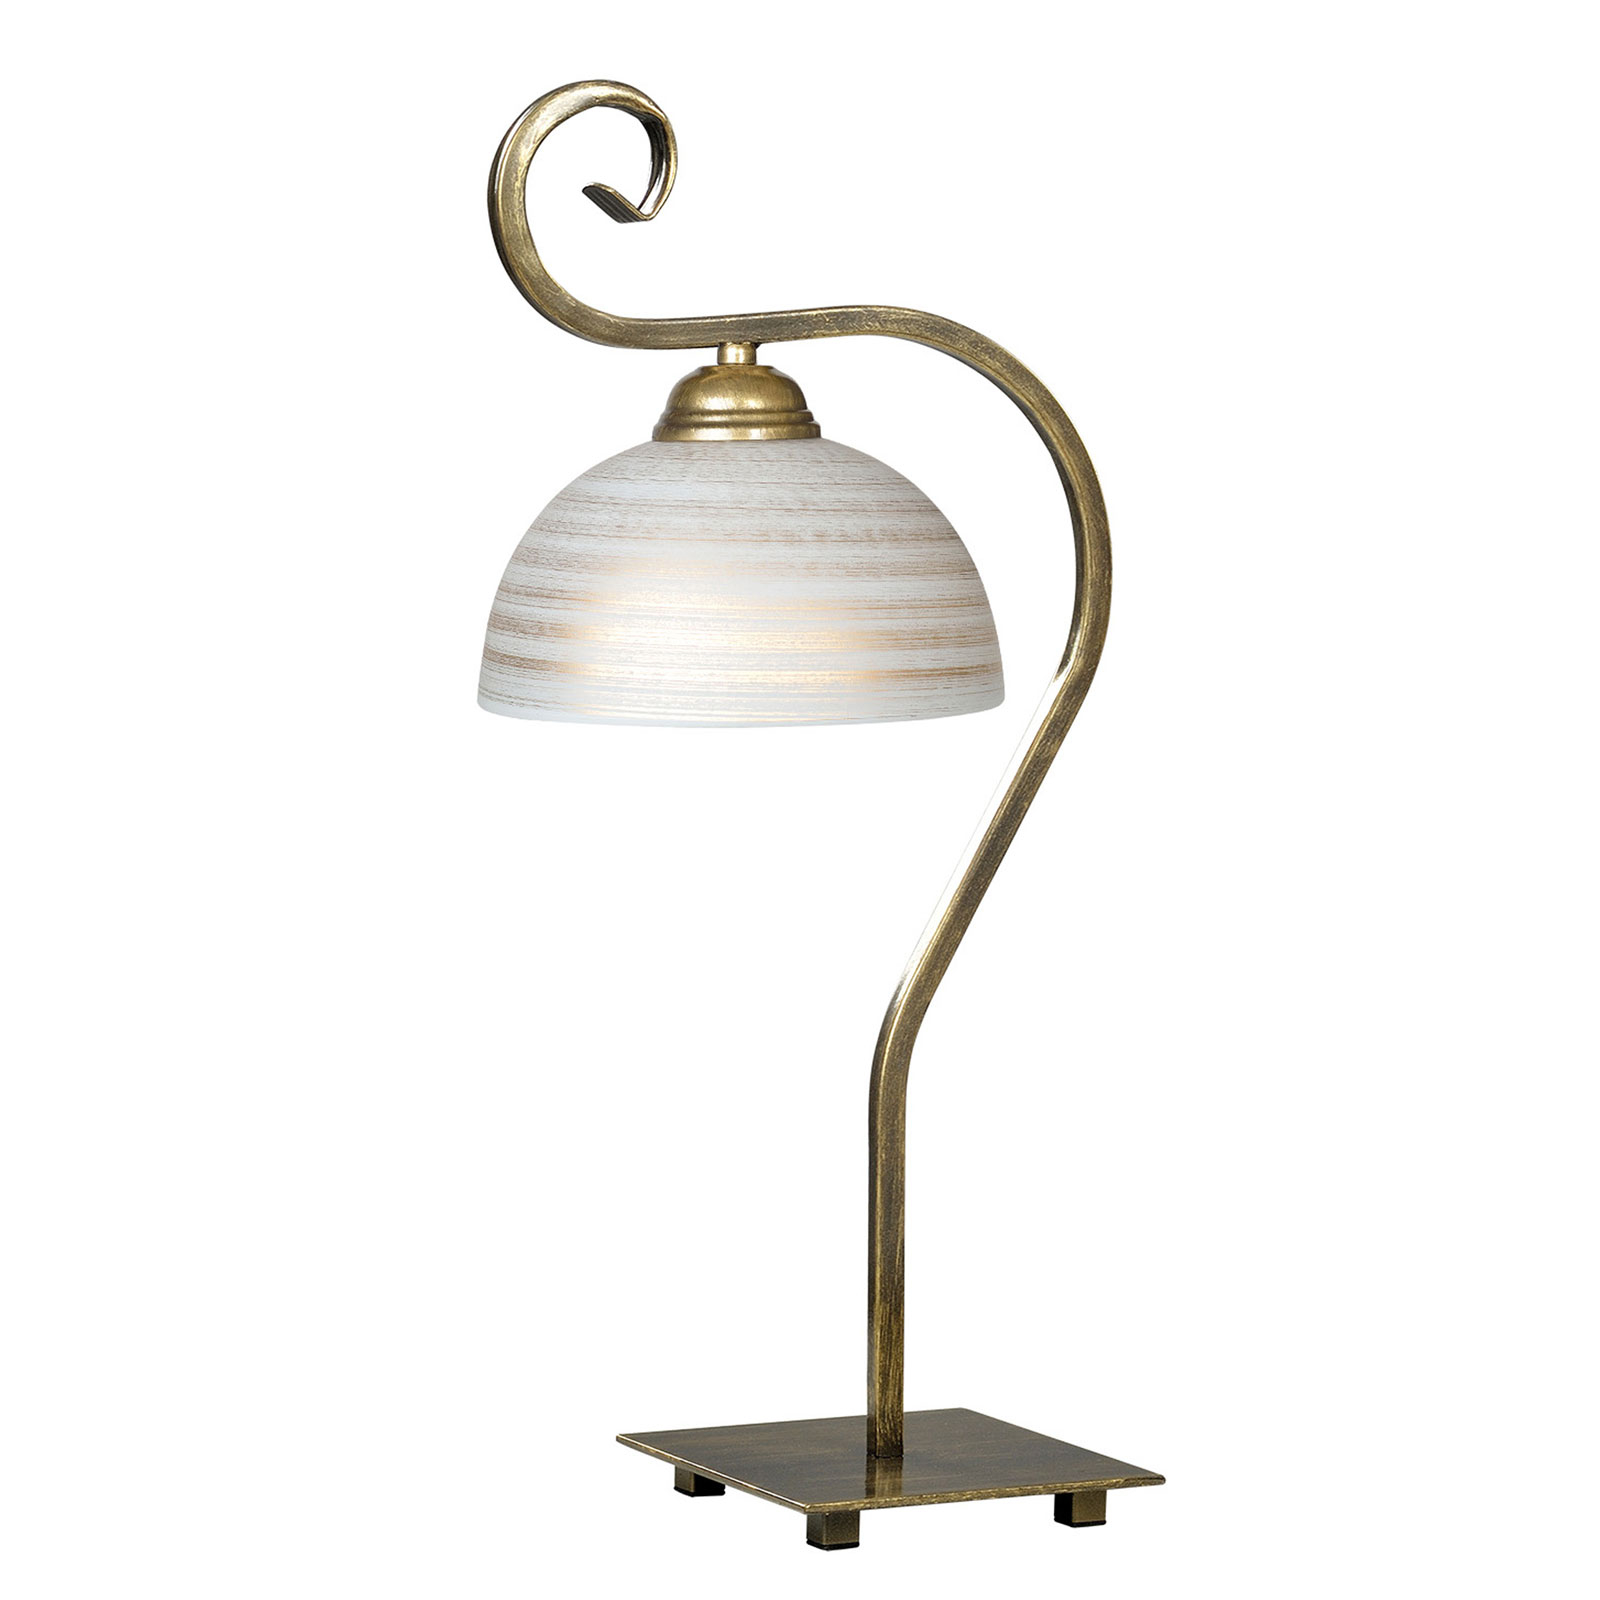 Stolní lampa Wivara LN1, klasický design, zlatá